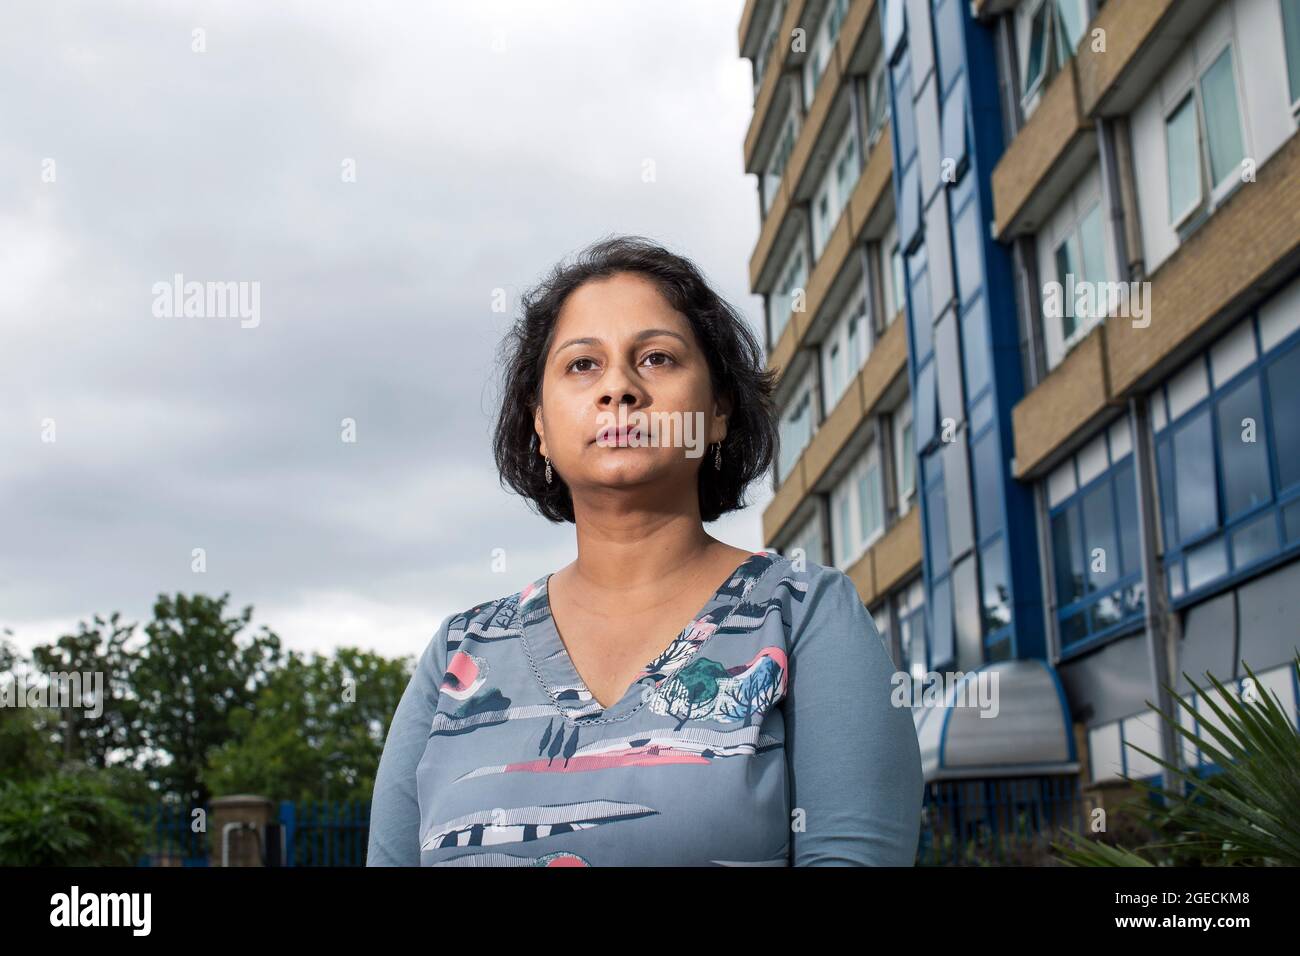 UK ,Kent,Bromley am 14. August: Ritu Saha, die Mitbegründerin der UK Cladding Action Group, lebt im obersten Stockwerk des Northpoint-Gebäudes. Stockfoto